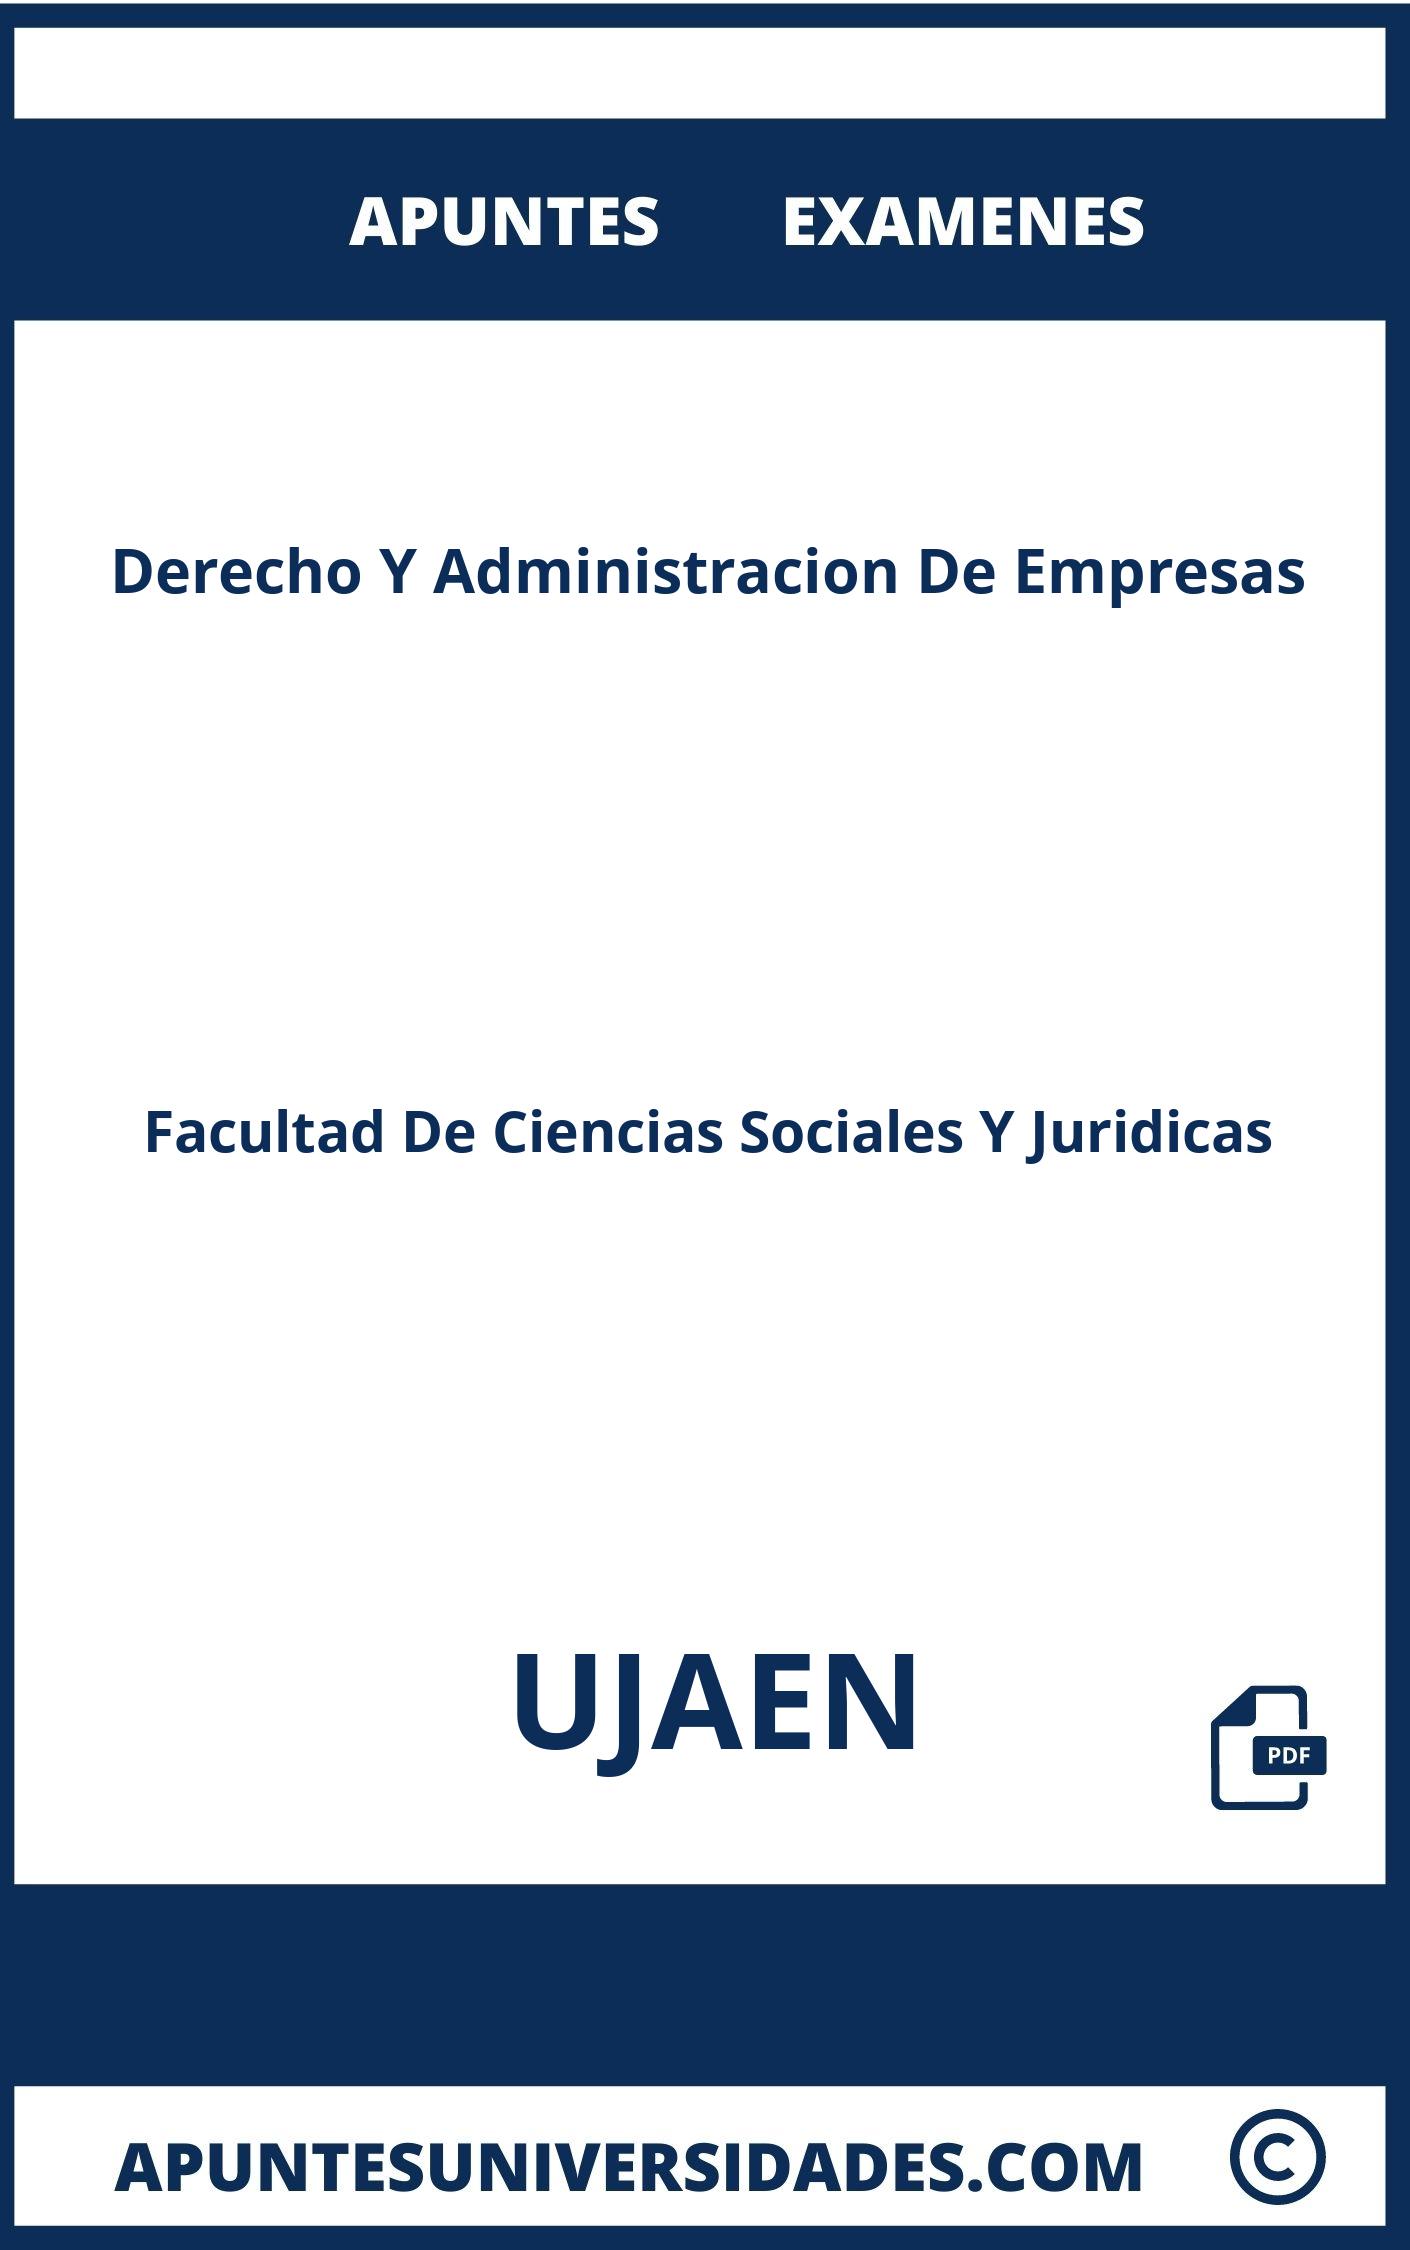 Apuntes Examenes Derecho Y Administracion De Empresas UJAEN